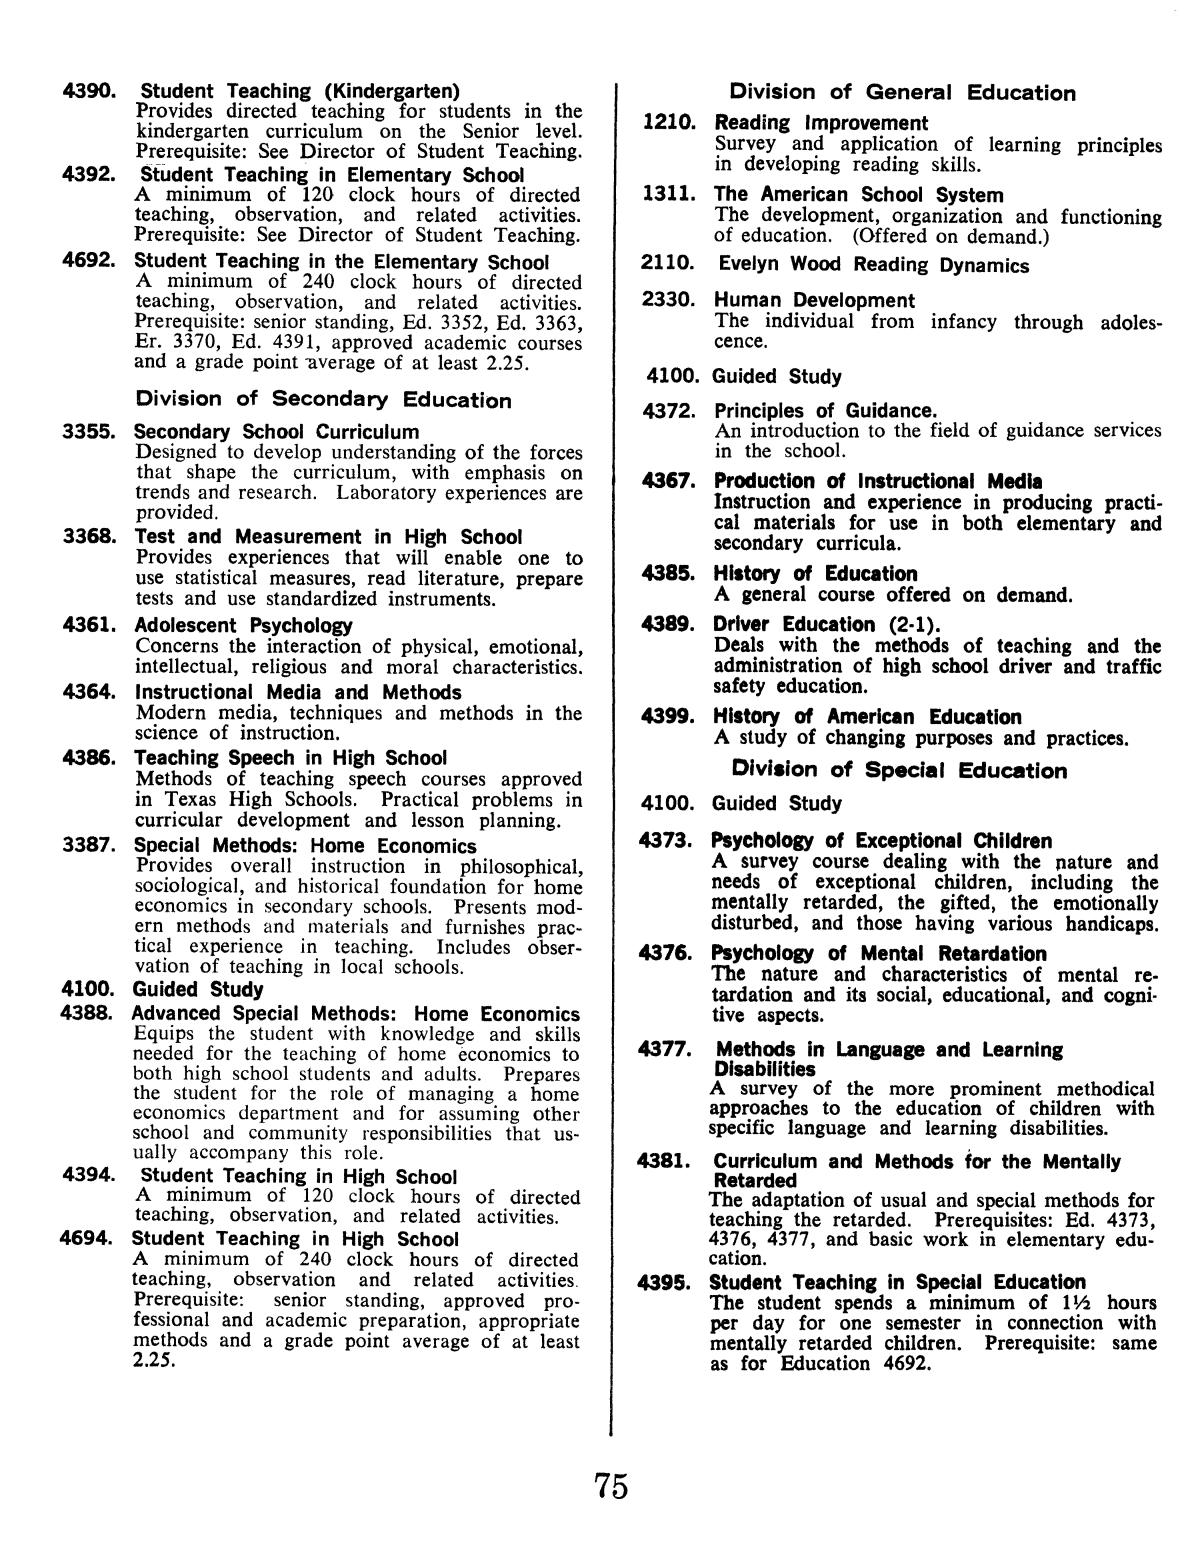 Catalog of Abilene Christian College, 1974-1975
                                                
                                                    75
                                                